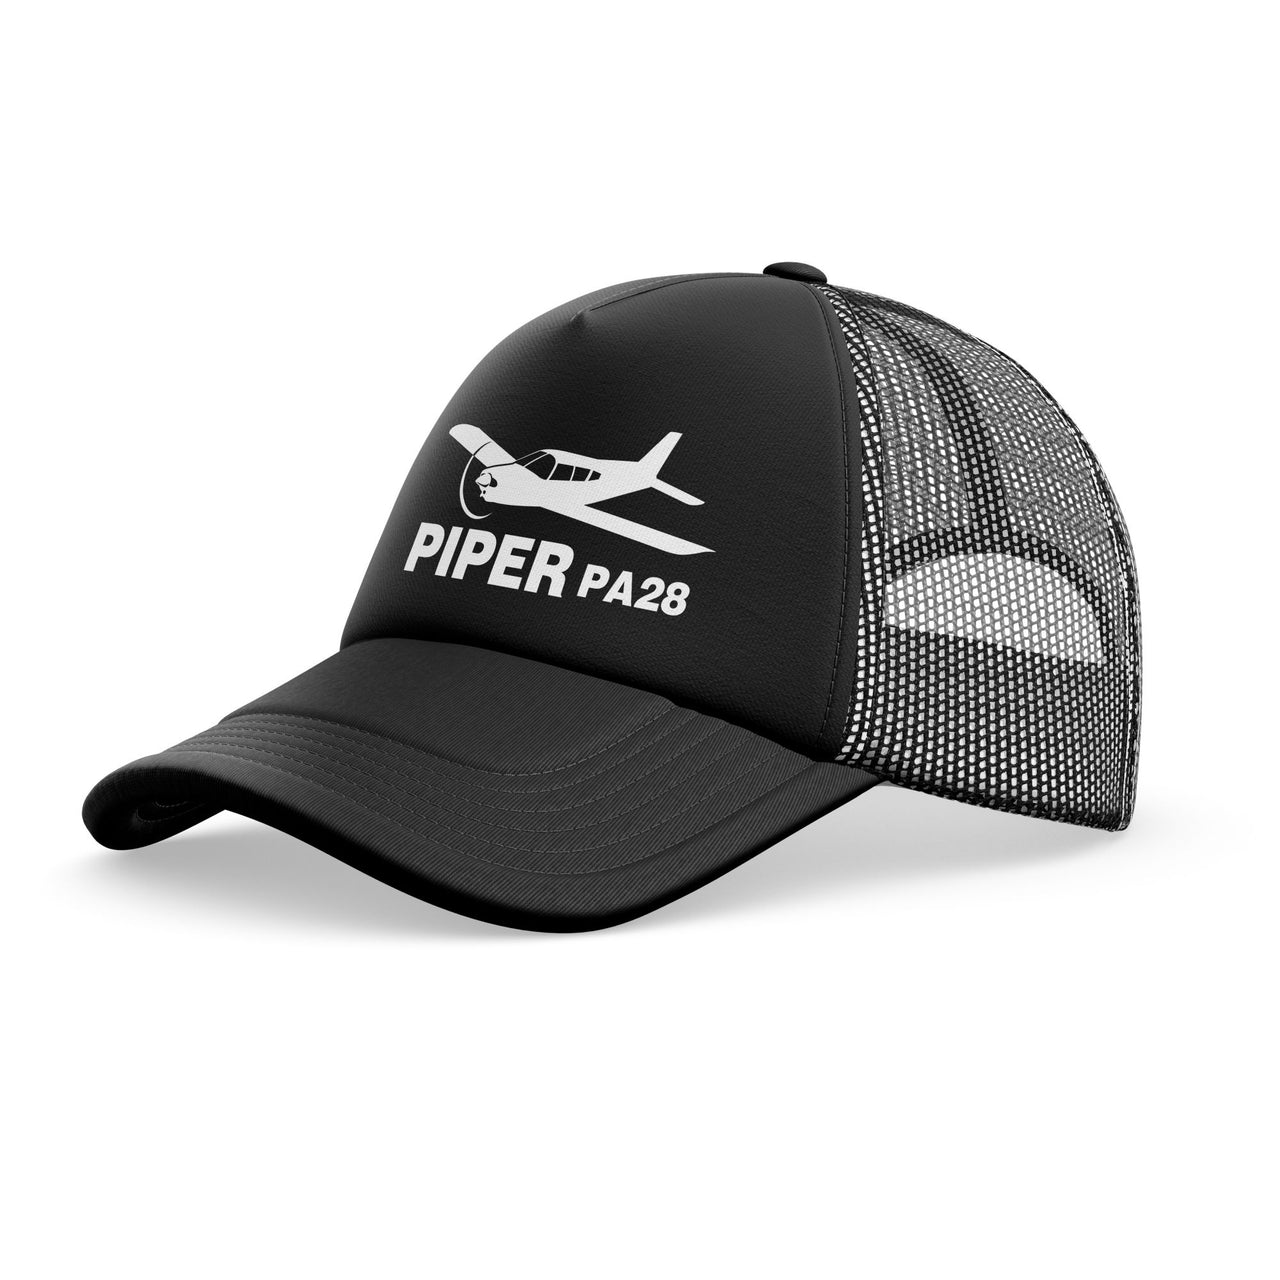 The Piper PA28 Designed Trucker Caps & Hats